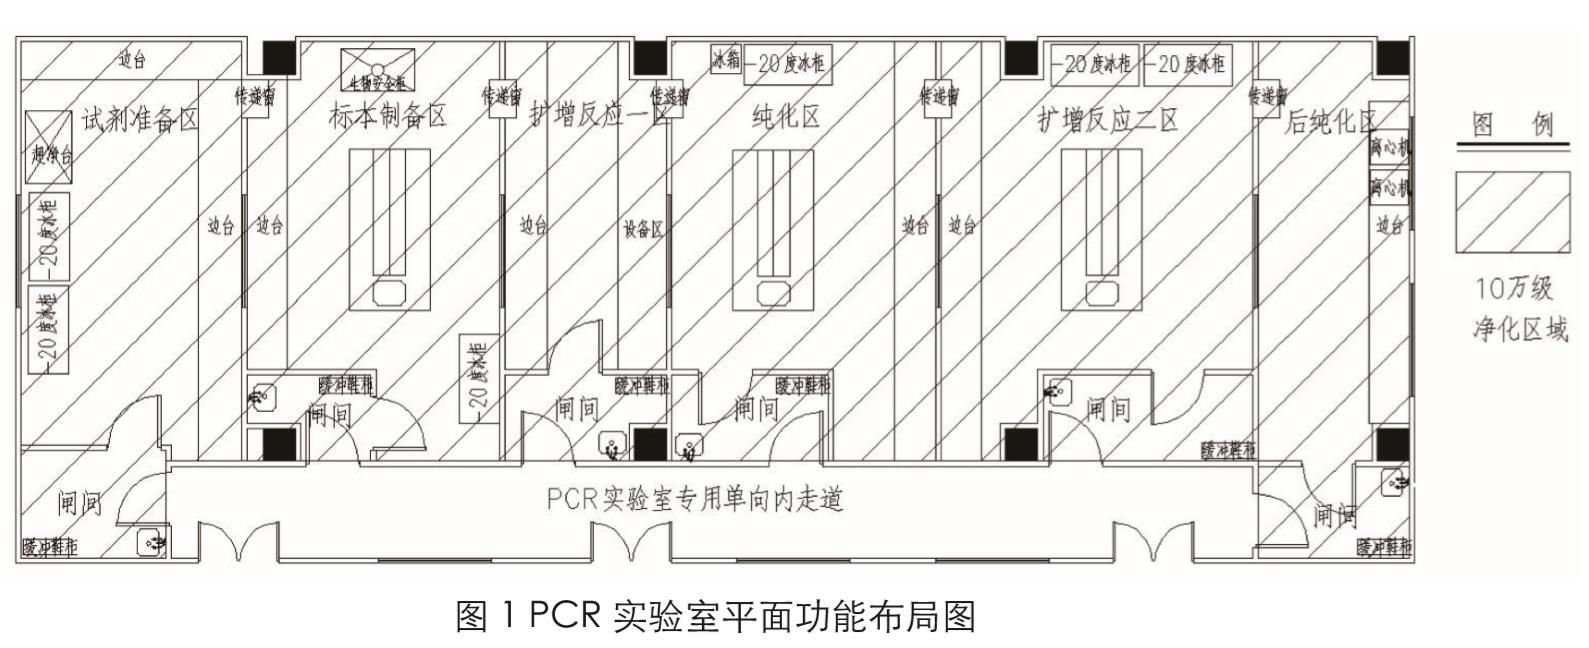 PCR实验室设计图